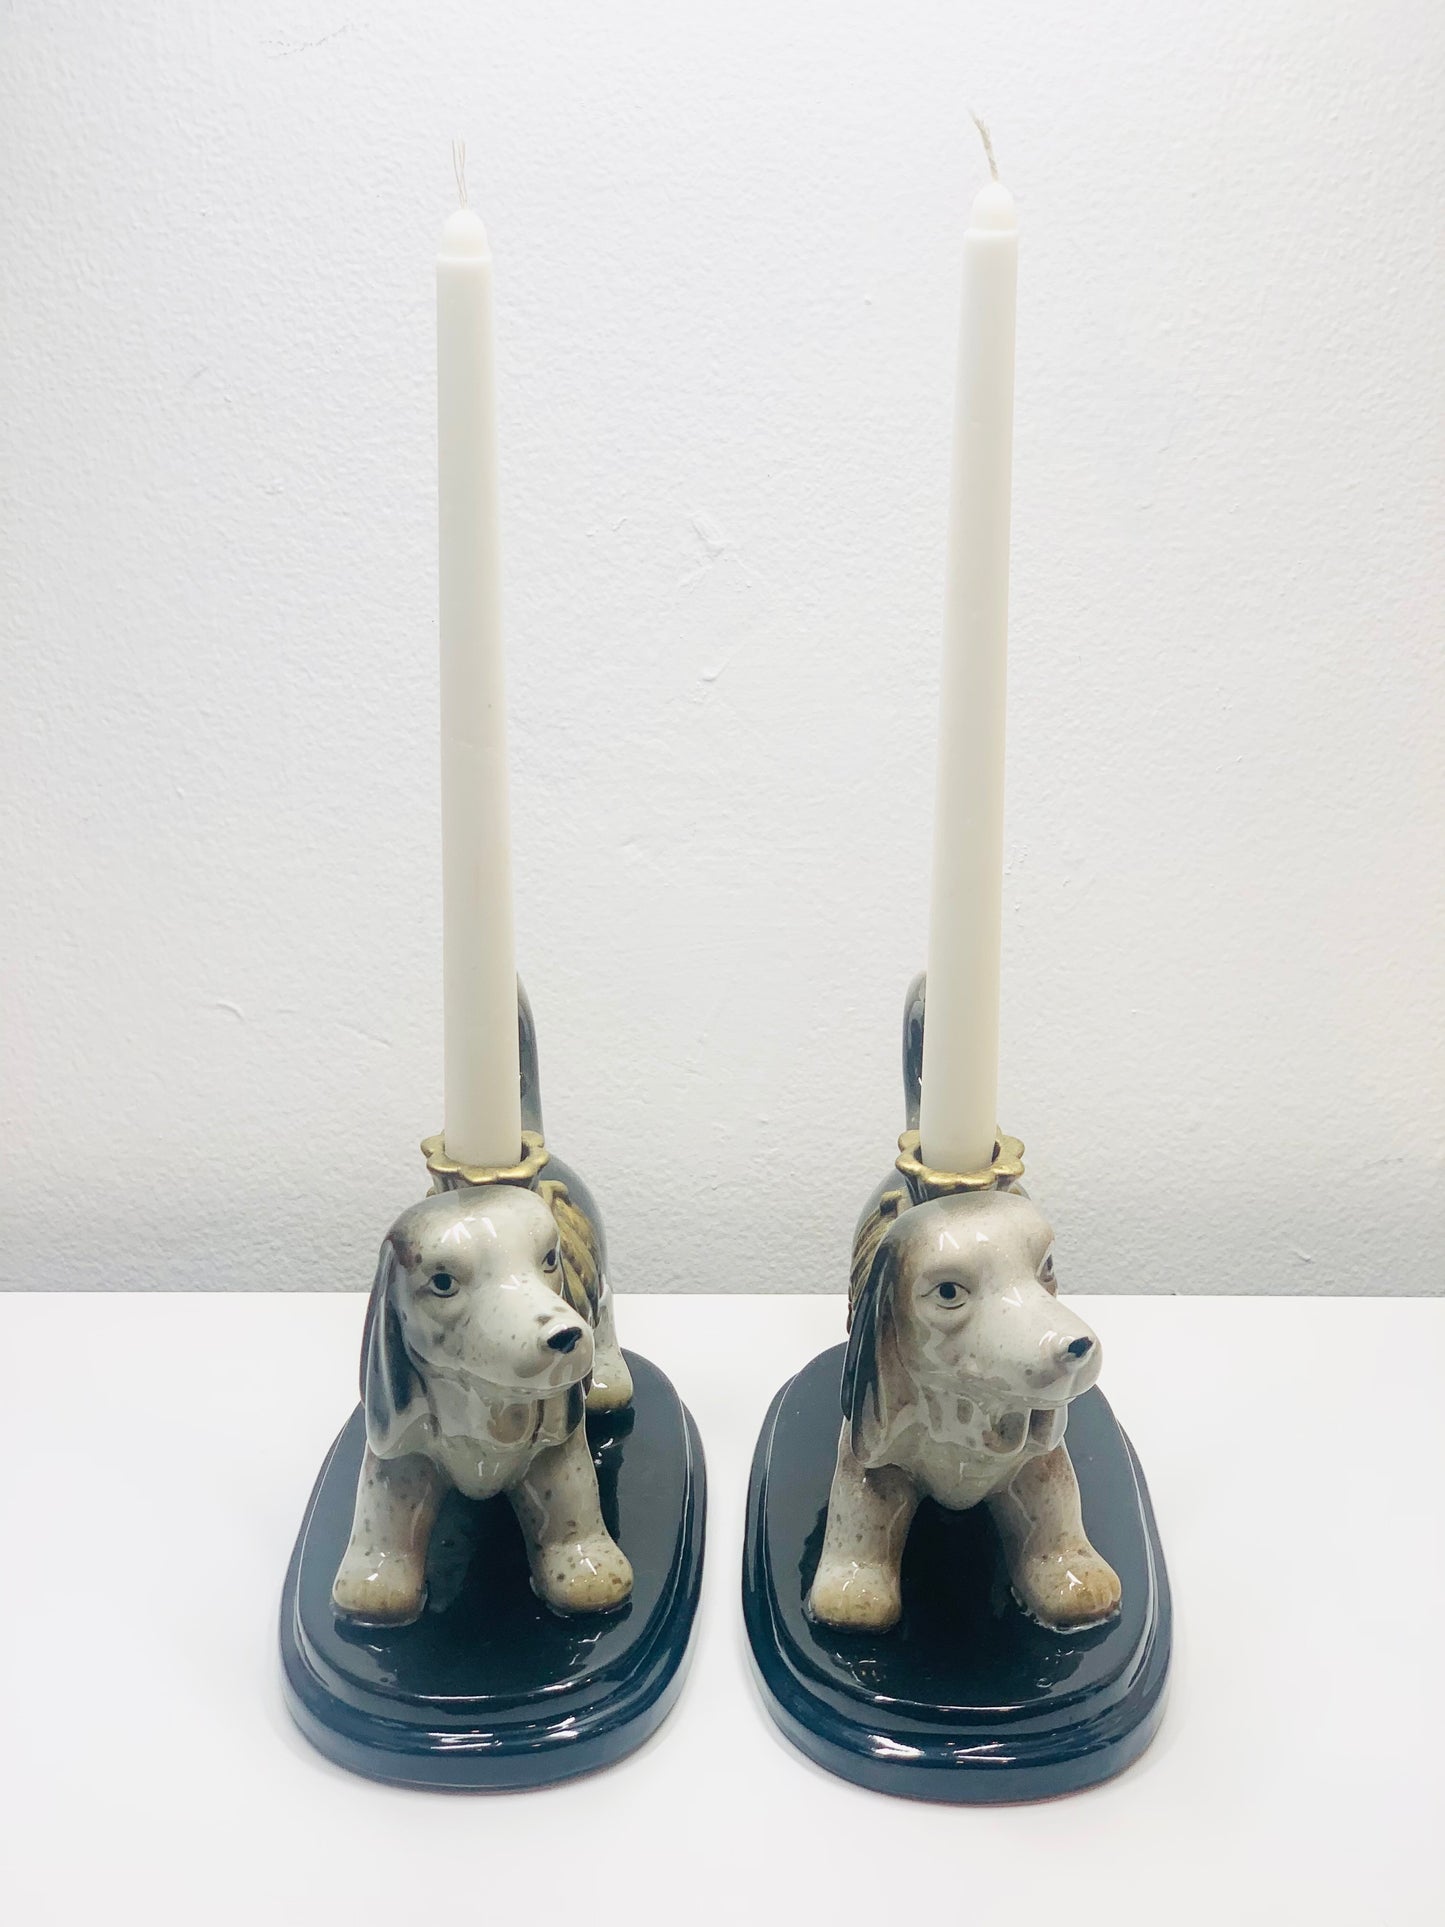 Retro Japanese dog figurine candle holder